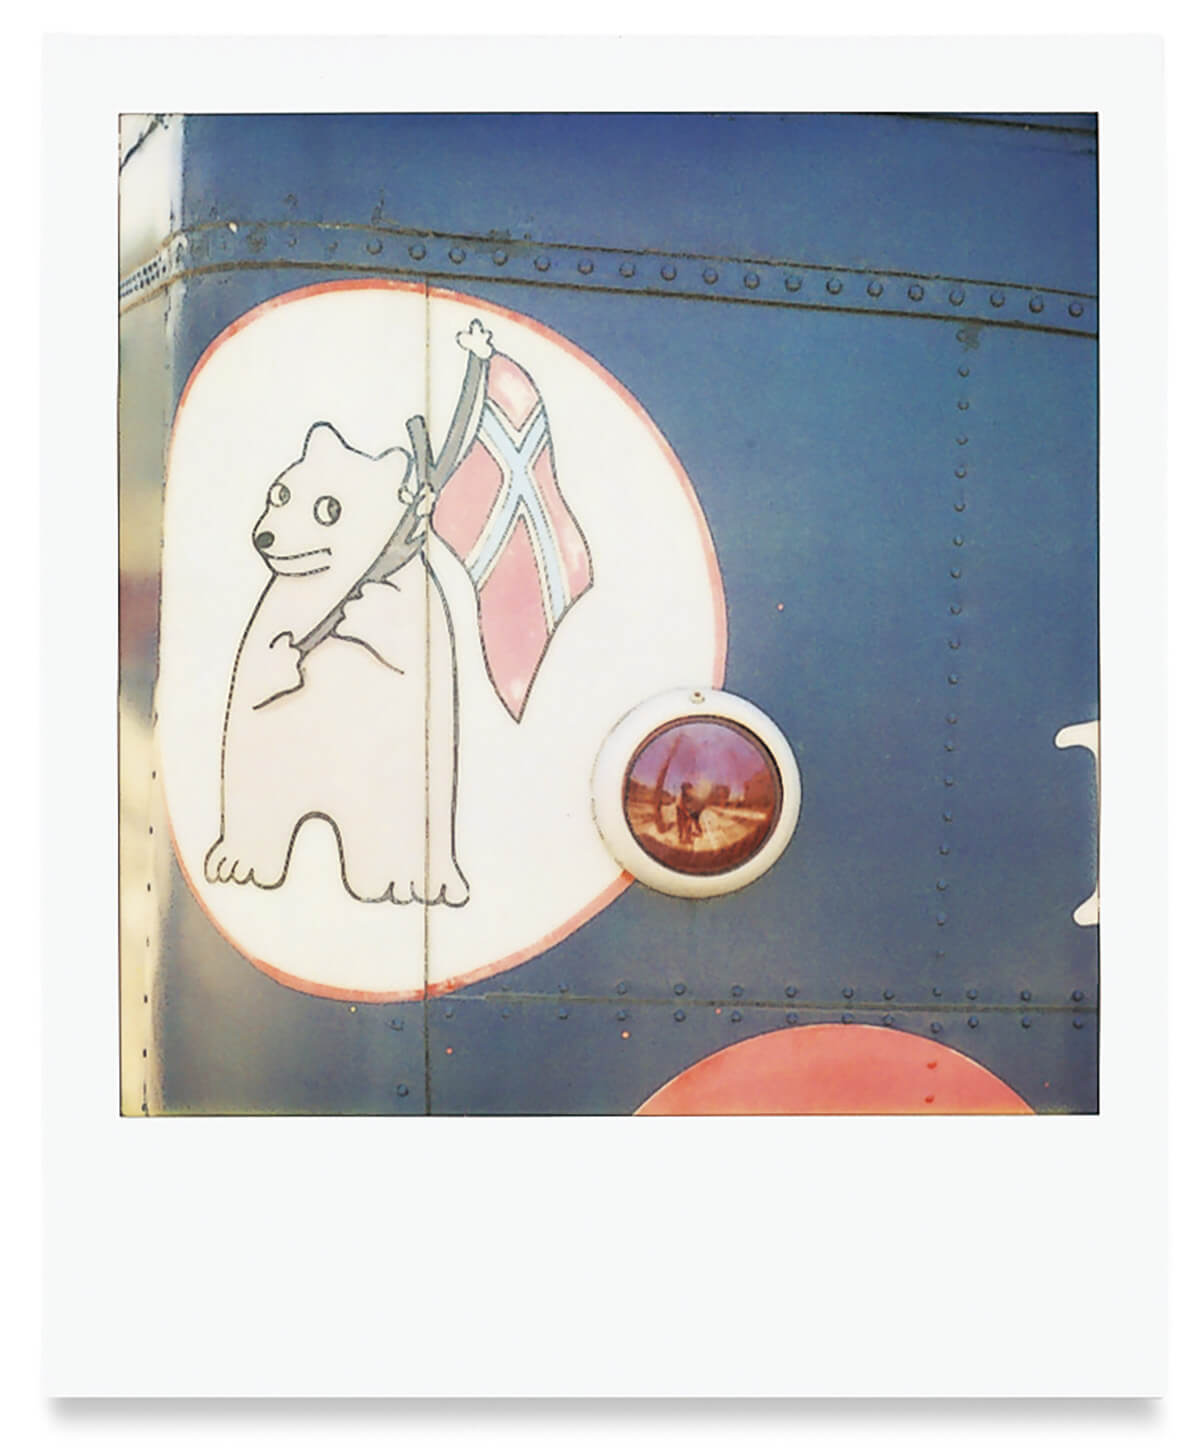 高知県の金魚電車に描かれたイラスト